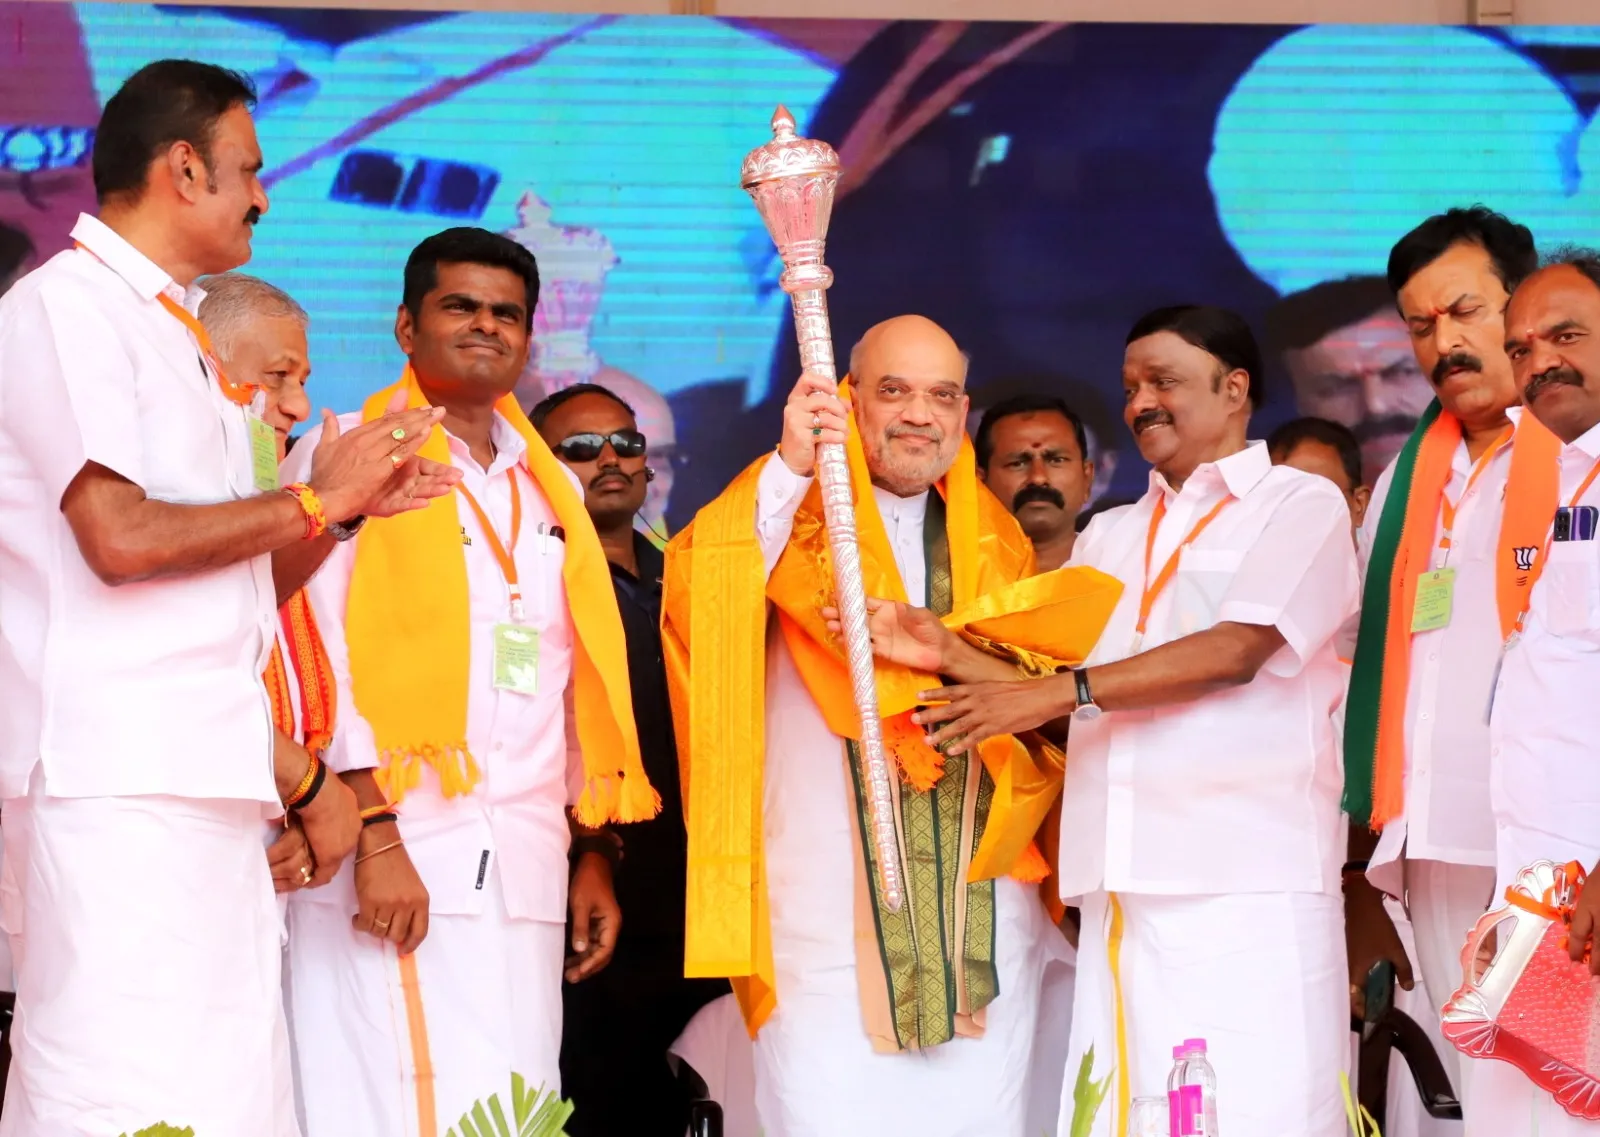 Amitajyoti | भाजपा को मिलेंगी 300 से अधिक सीटें, मोदी जी बनेंगे तीसरे...